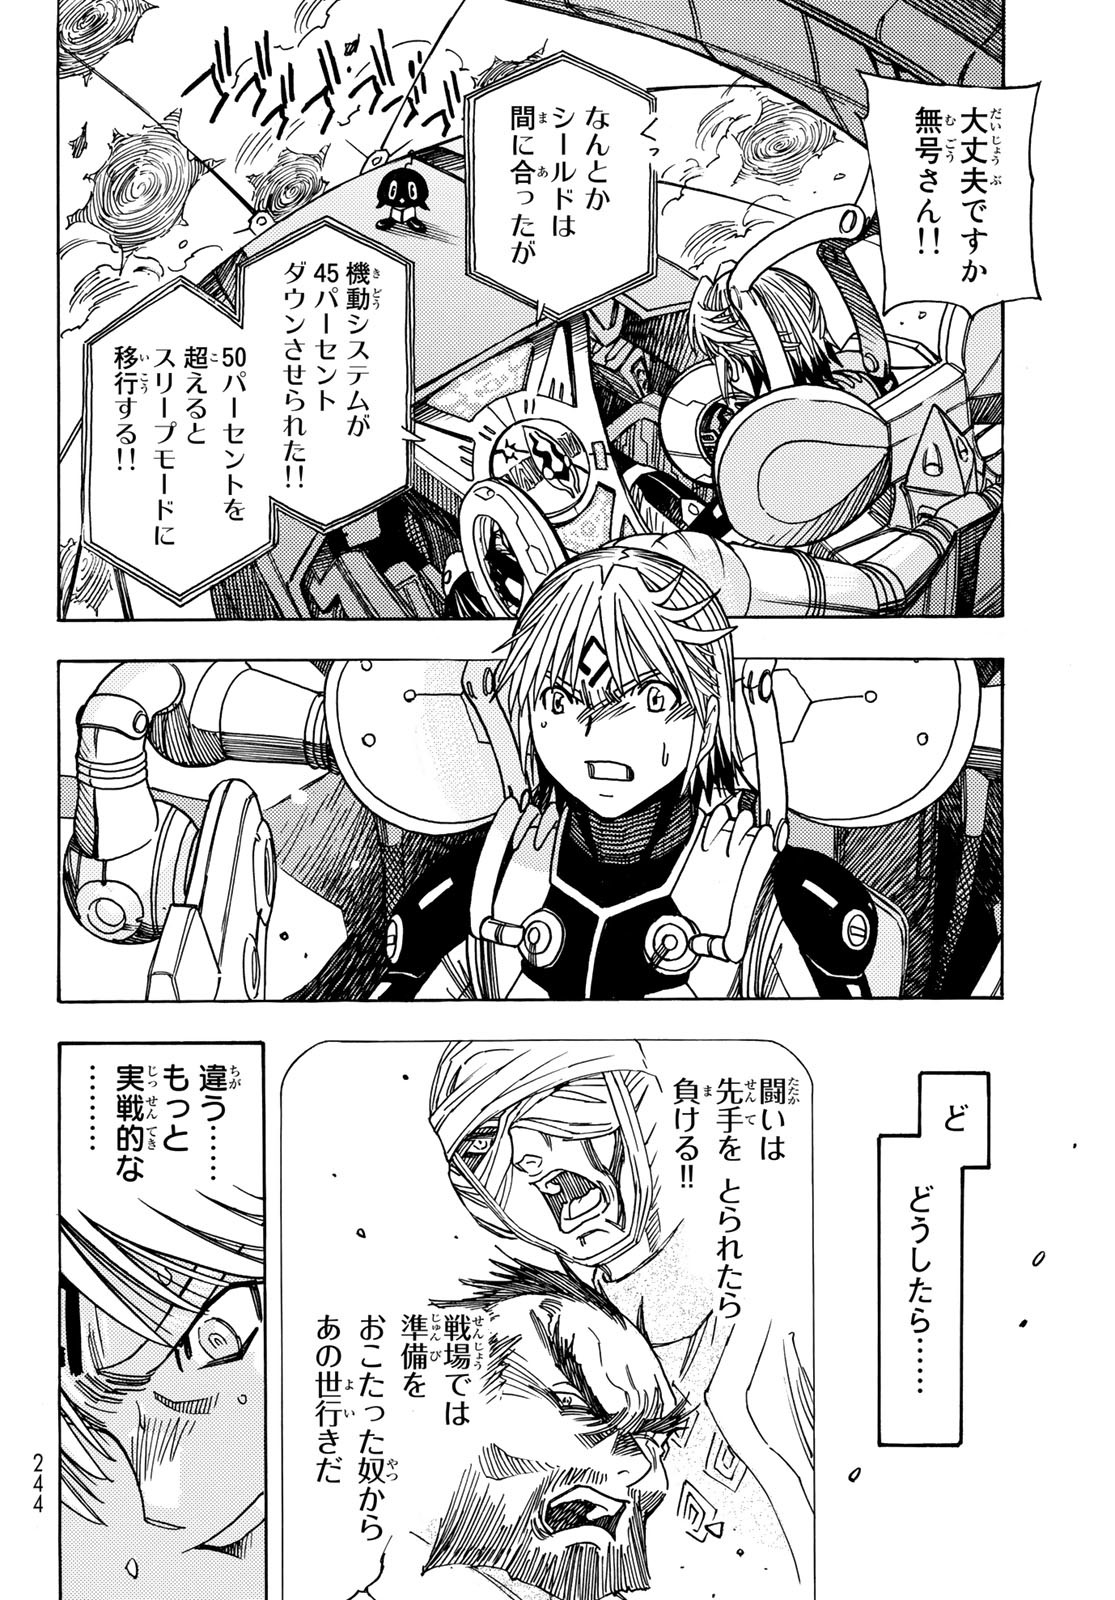 Mugou no Schnell Gear: Chikyuugai Kisouka AI - Chapter 46 - Page 10